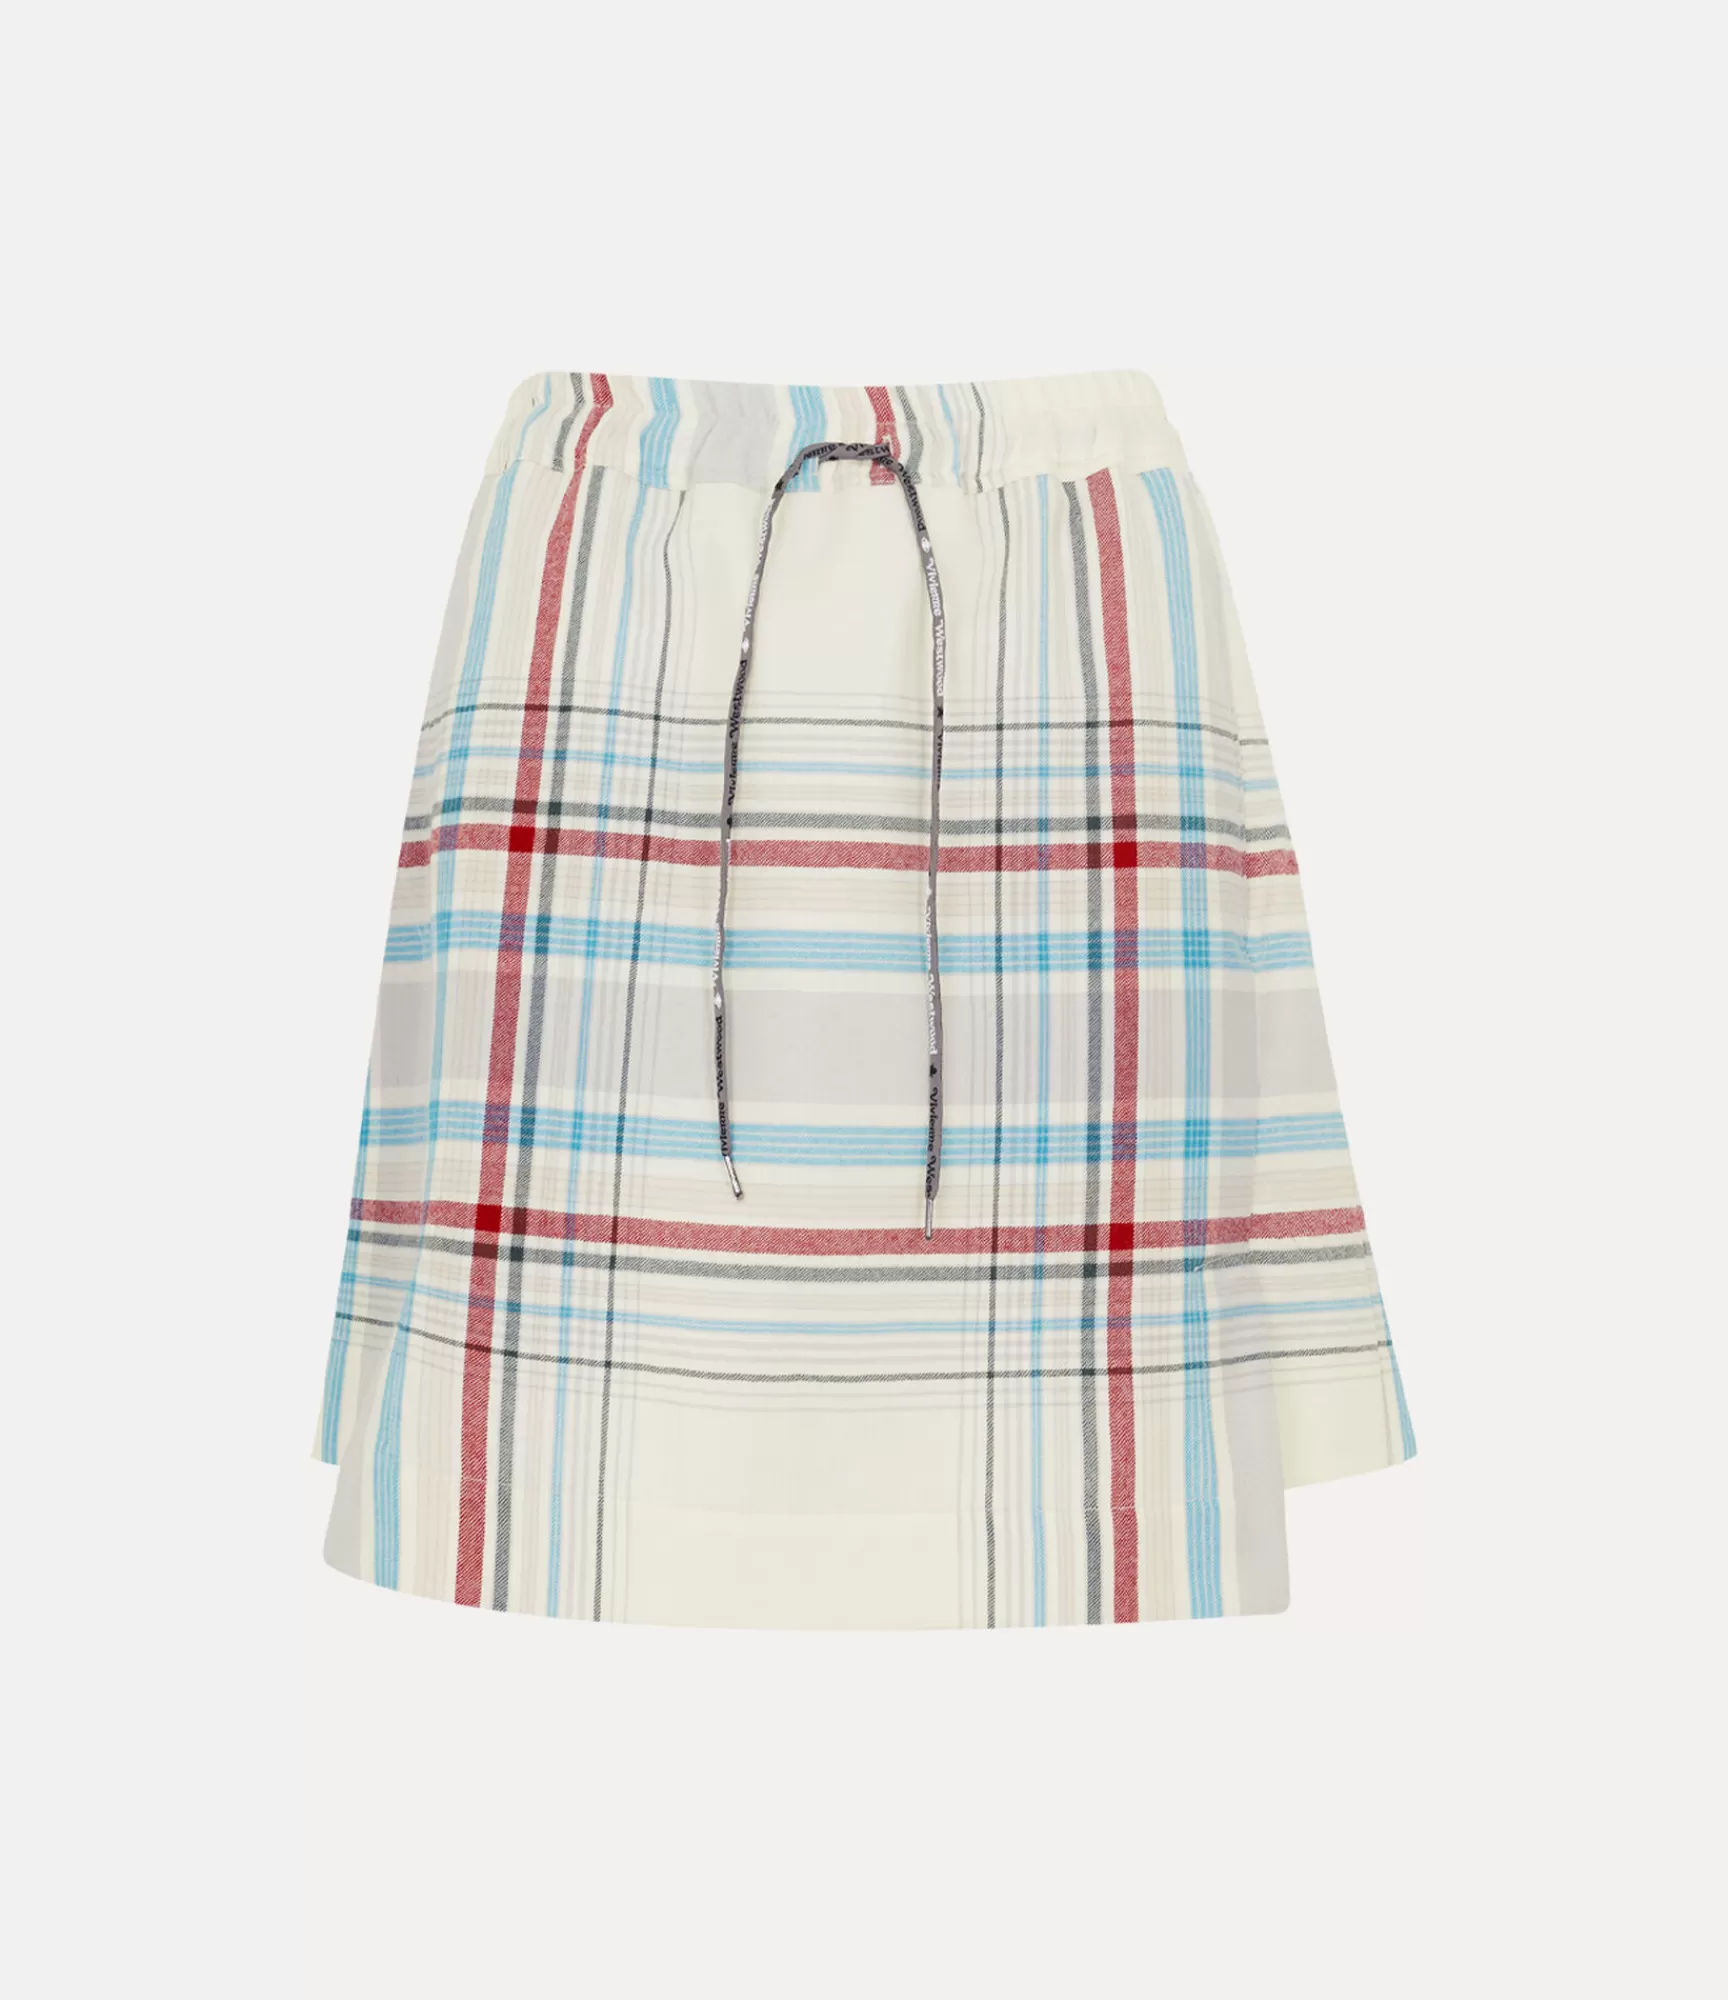 Vivienne Westwood Skirts*Kilt Multi